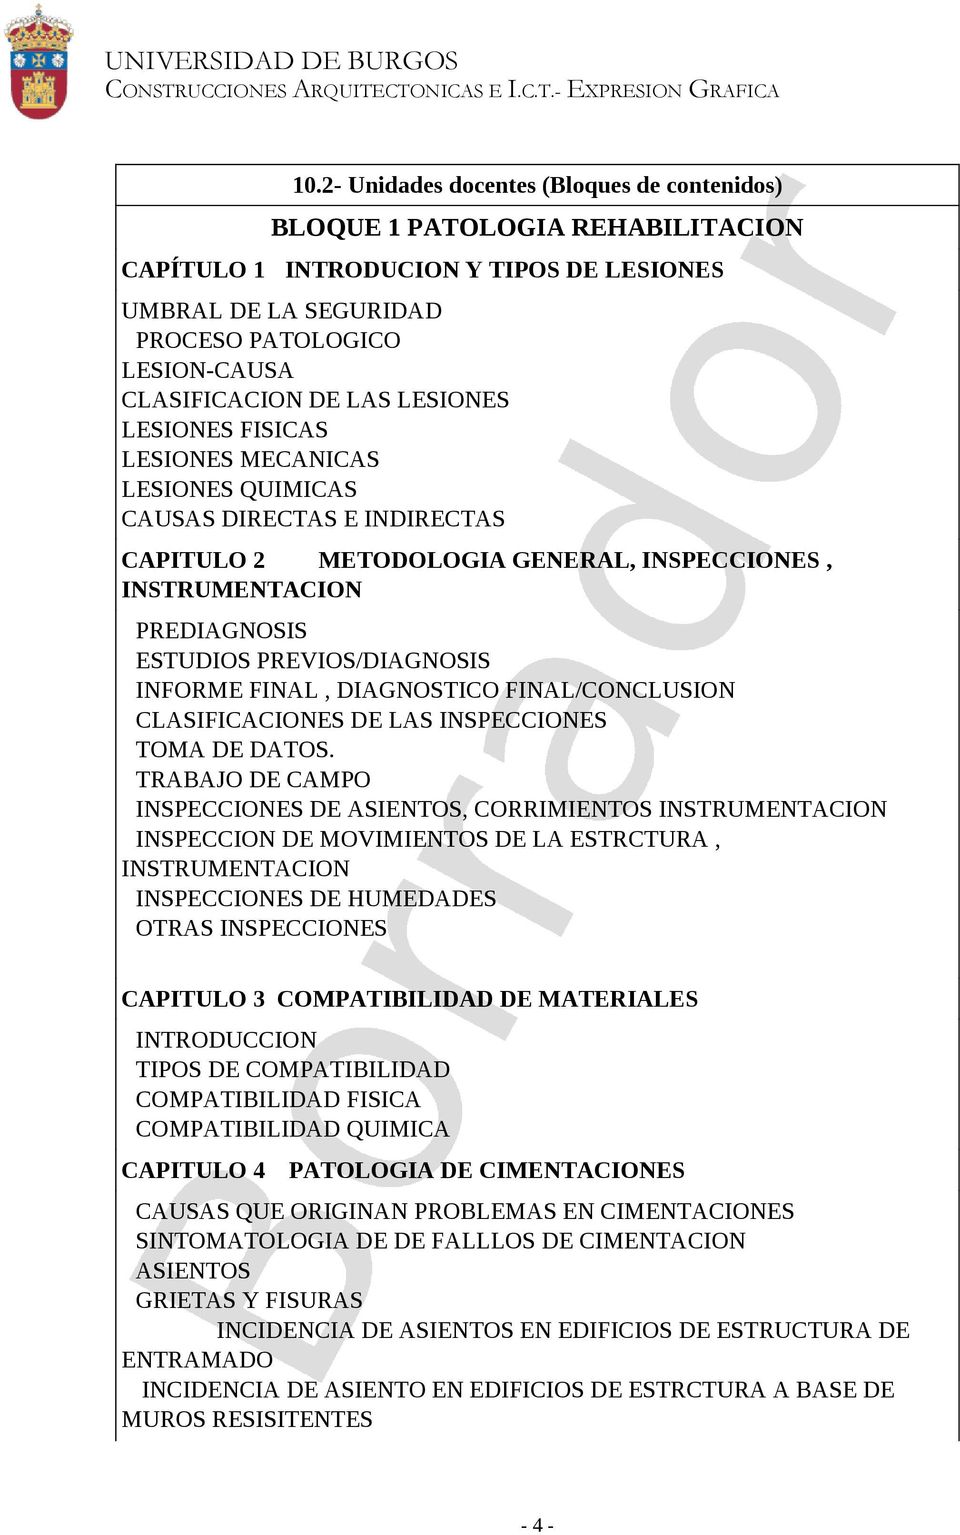 INFORME FINAL, DIAGNOSTICO FINAL/CONCLUSION CLASIFICACIONES DE LAS INSPECCIONES TOMA DE DATOS.